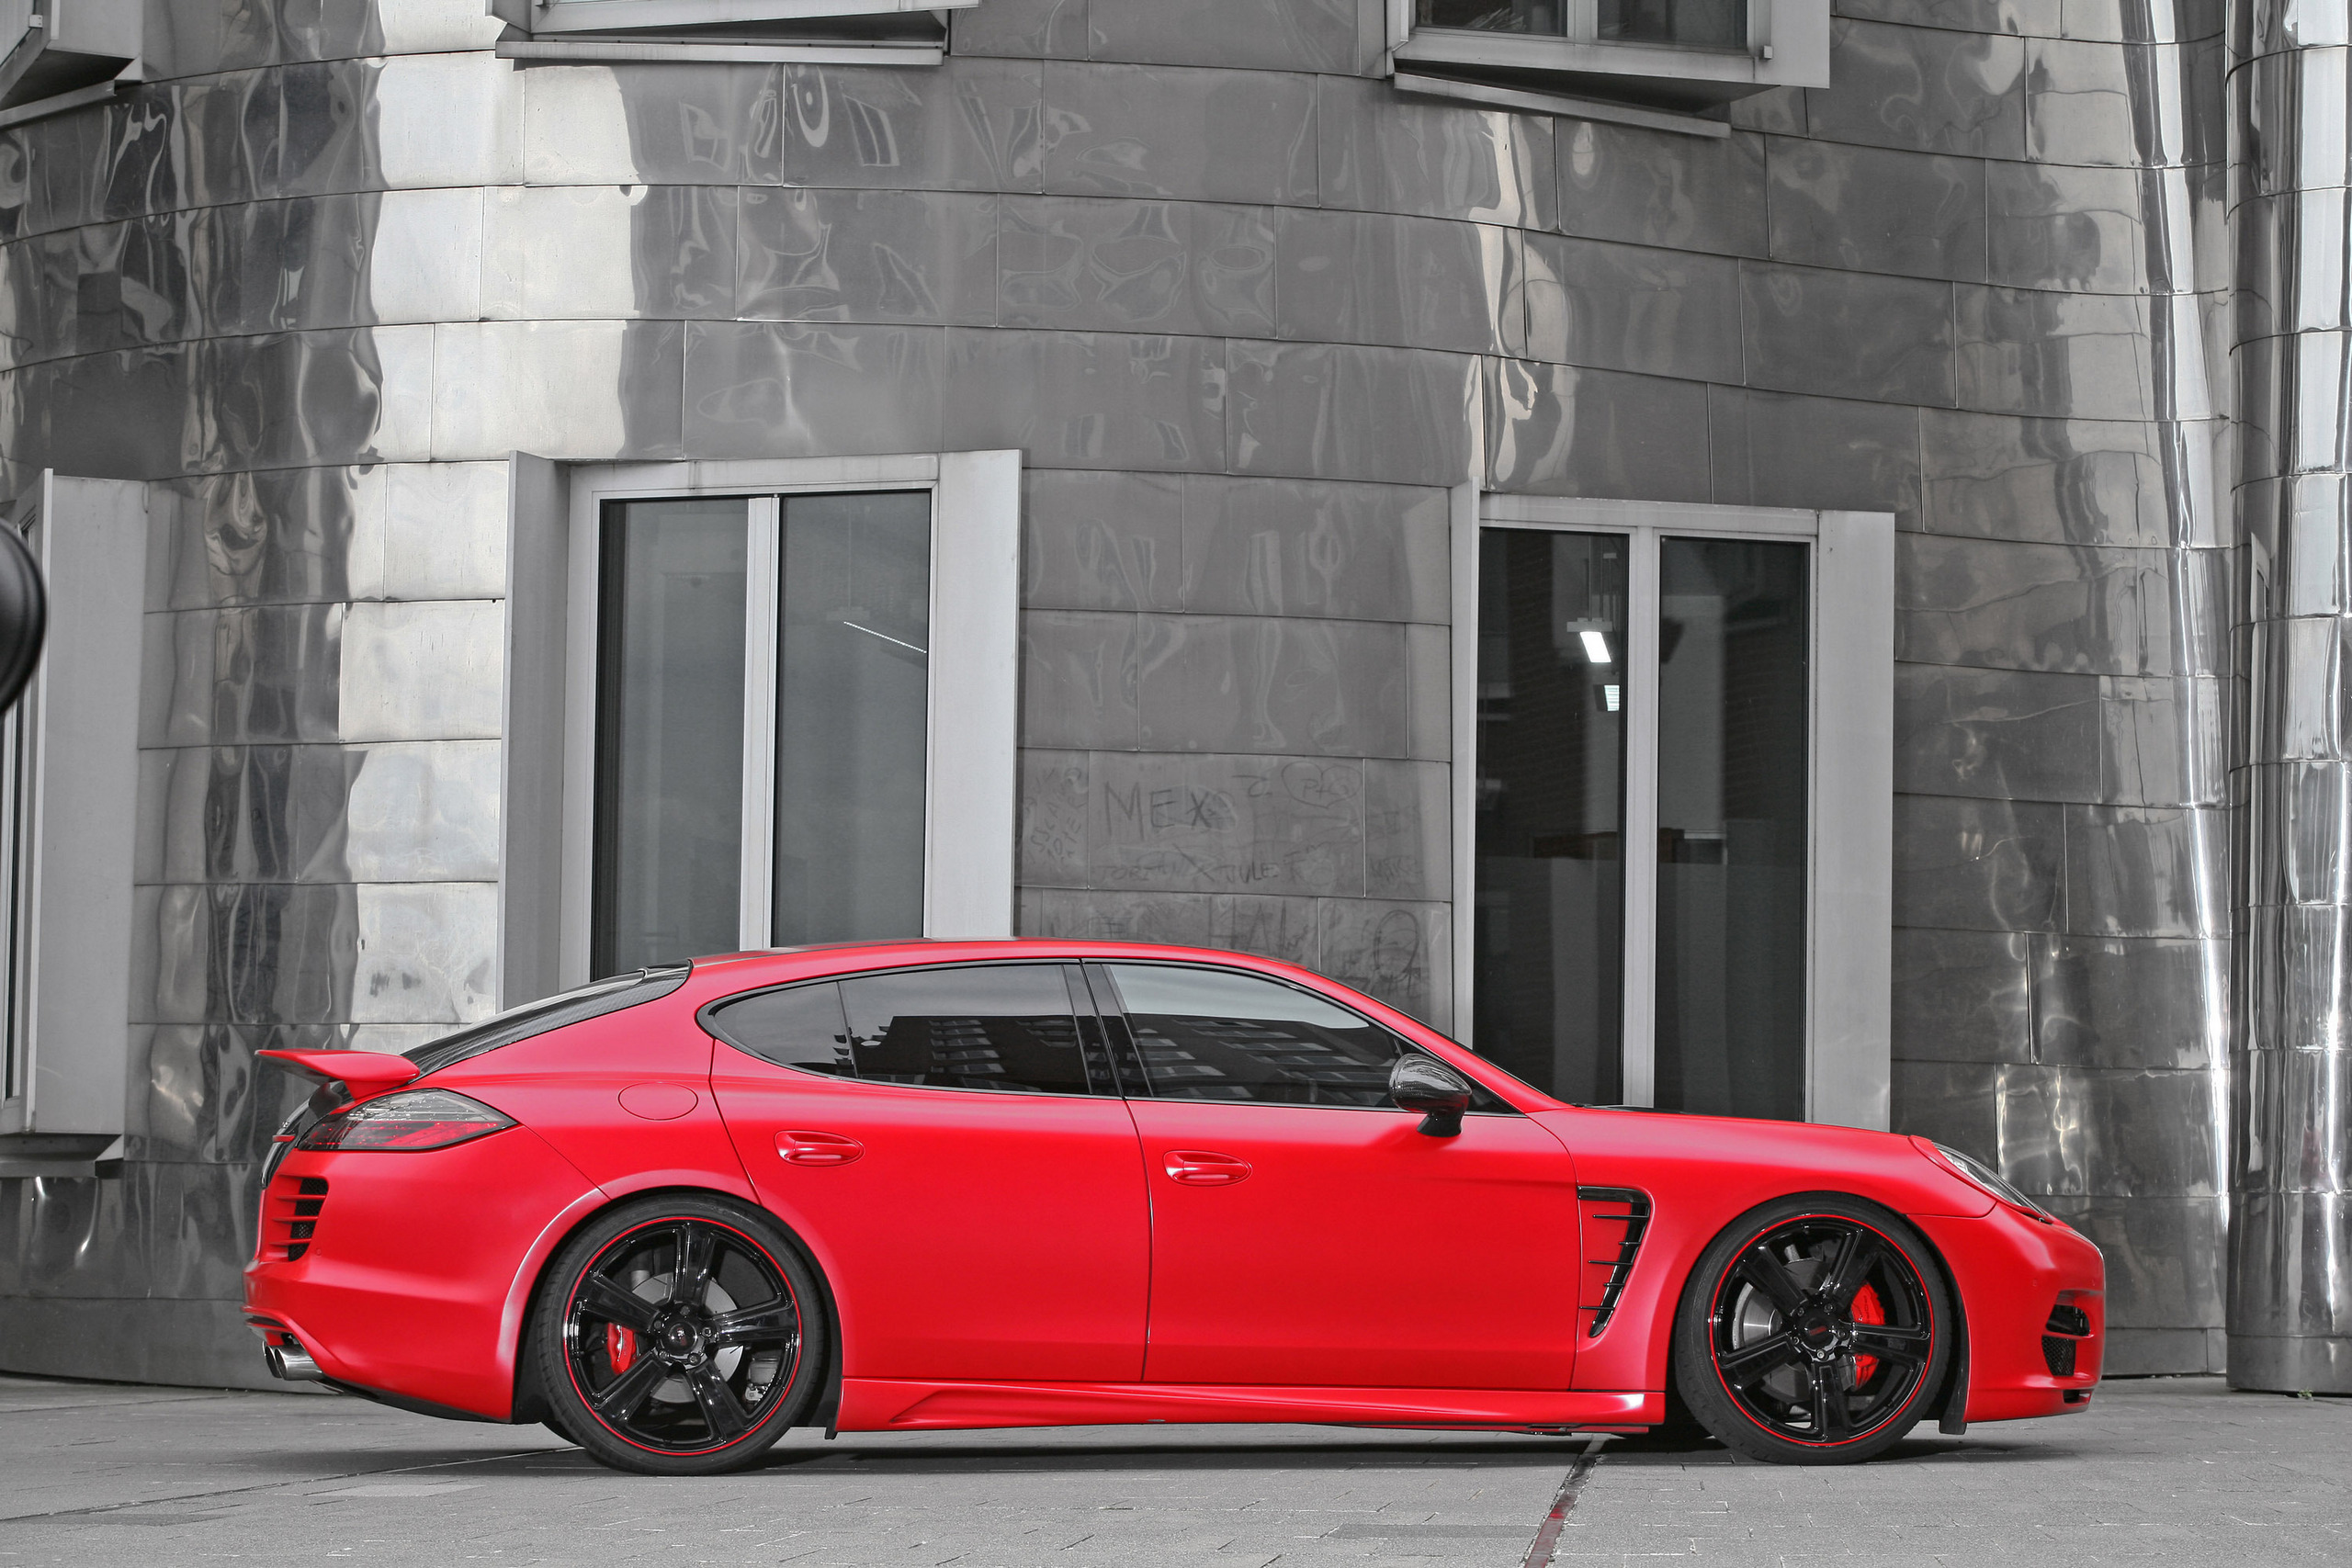 Porsche Panamera 2012 Red , HD Wallpaper & Backgrounds